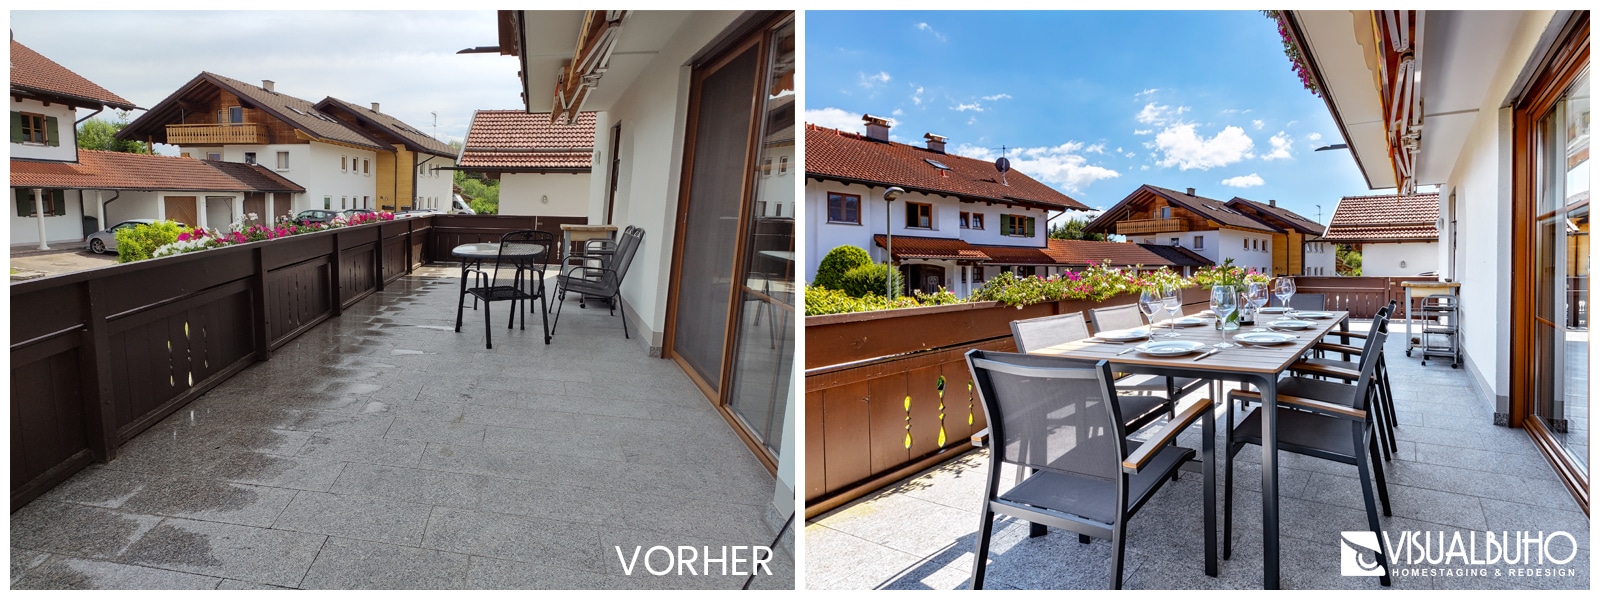 Terrasse Ferienhaus Lechbruck Vergleichsbild